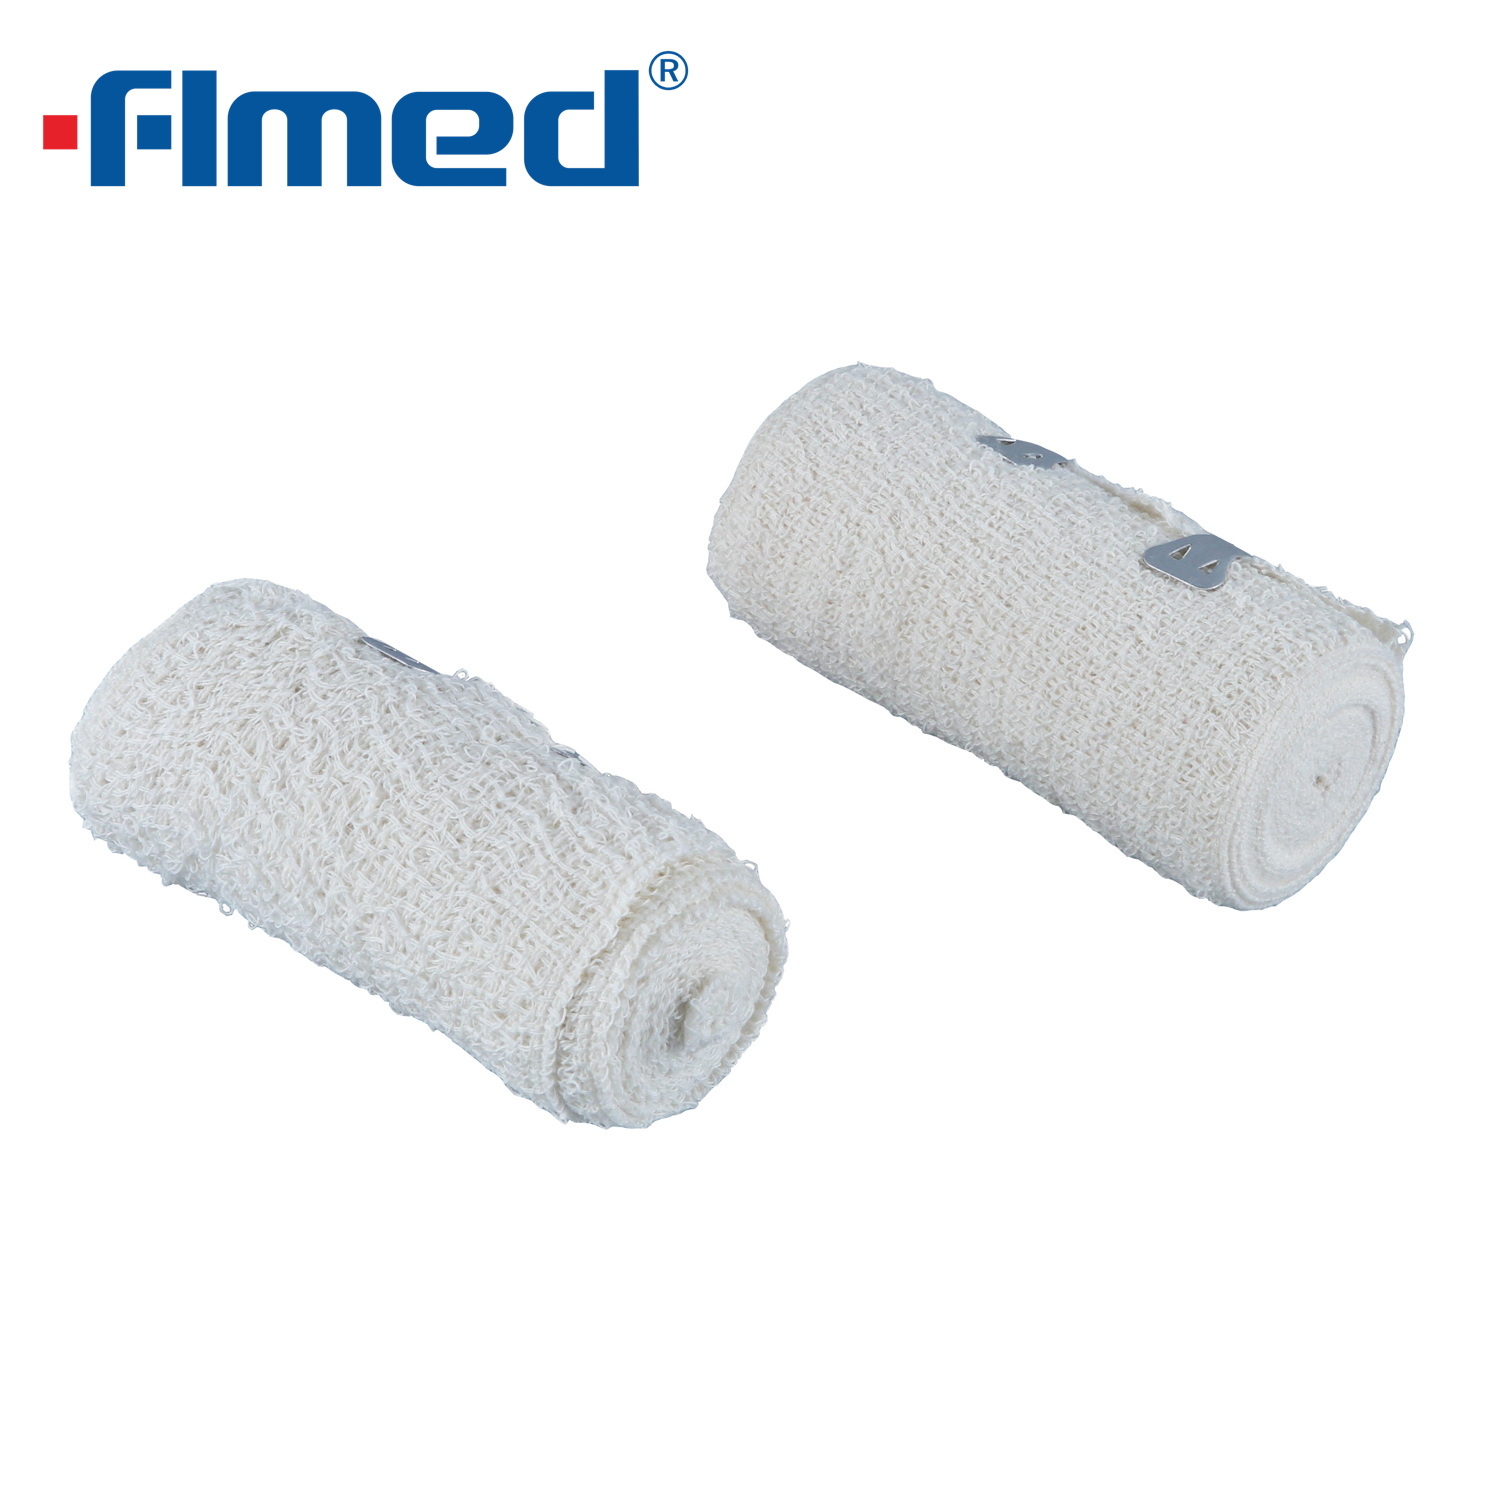 W 100% wysokiej jakości bawełniana bawełniana bandaż średnia 5 cm